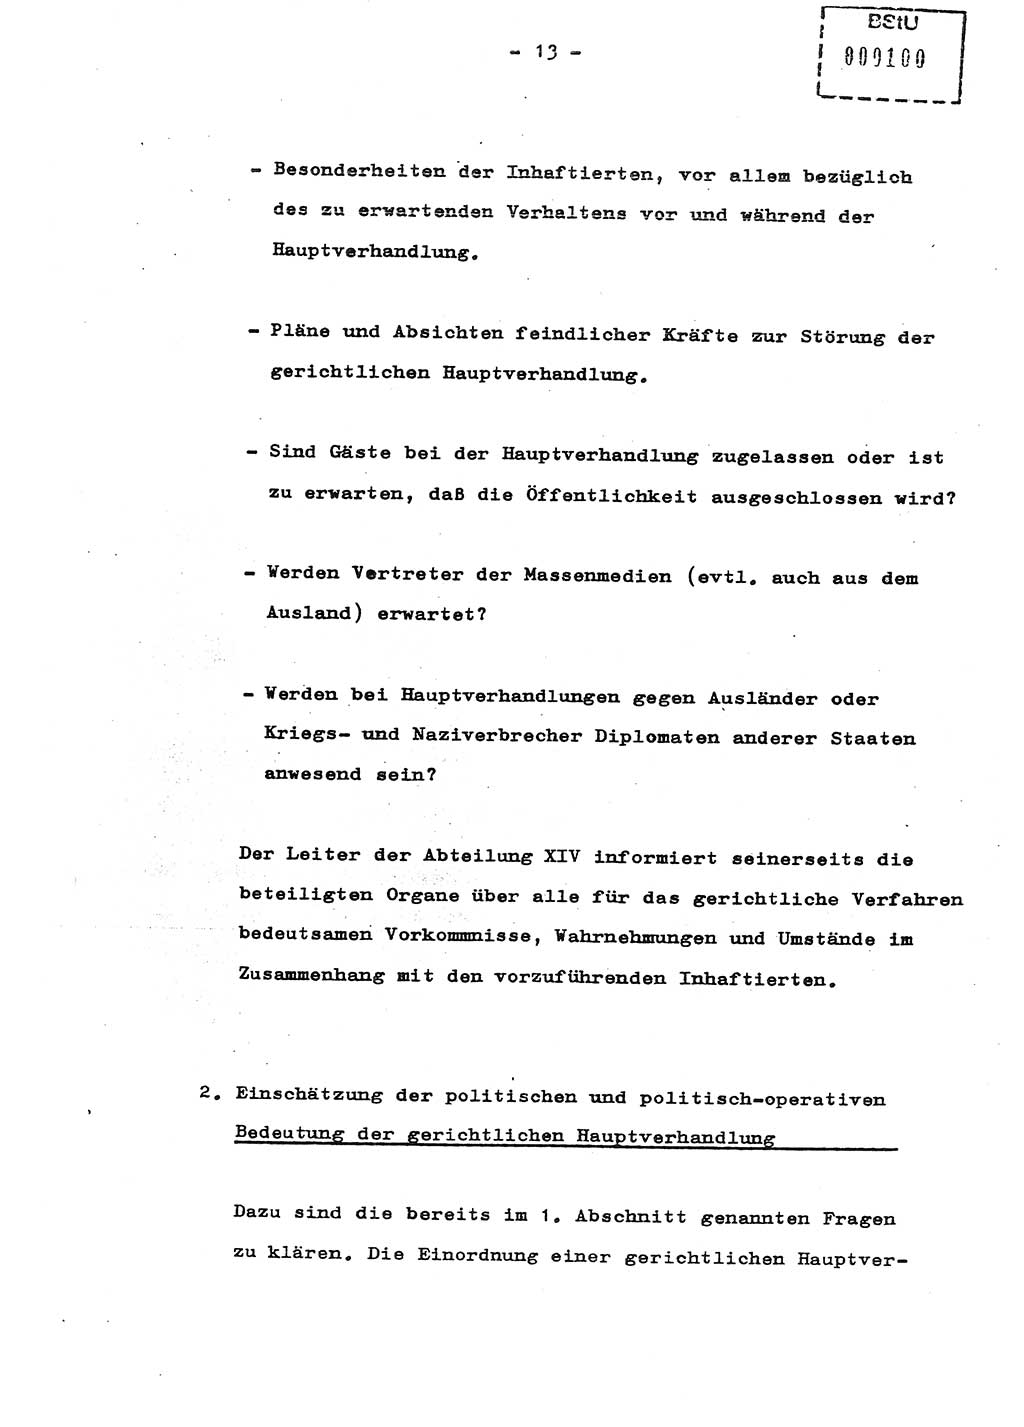 Schulungsmaterial Exemplar-Nr.: 8, Ministerium für Staatssicherheit [Deutsche Demokratische Republik (DDR)], Abteilung (Abt.) ⅩⅣ, Berlin 1987, Seite 13 (Sch.-Mat. Expl. 8 MfS DDR Abt. ⅩⅣ /87 1987, S. 13)